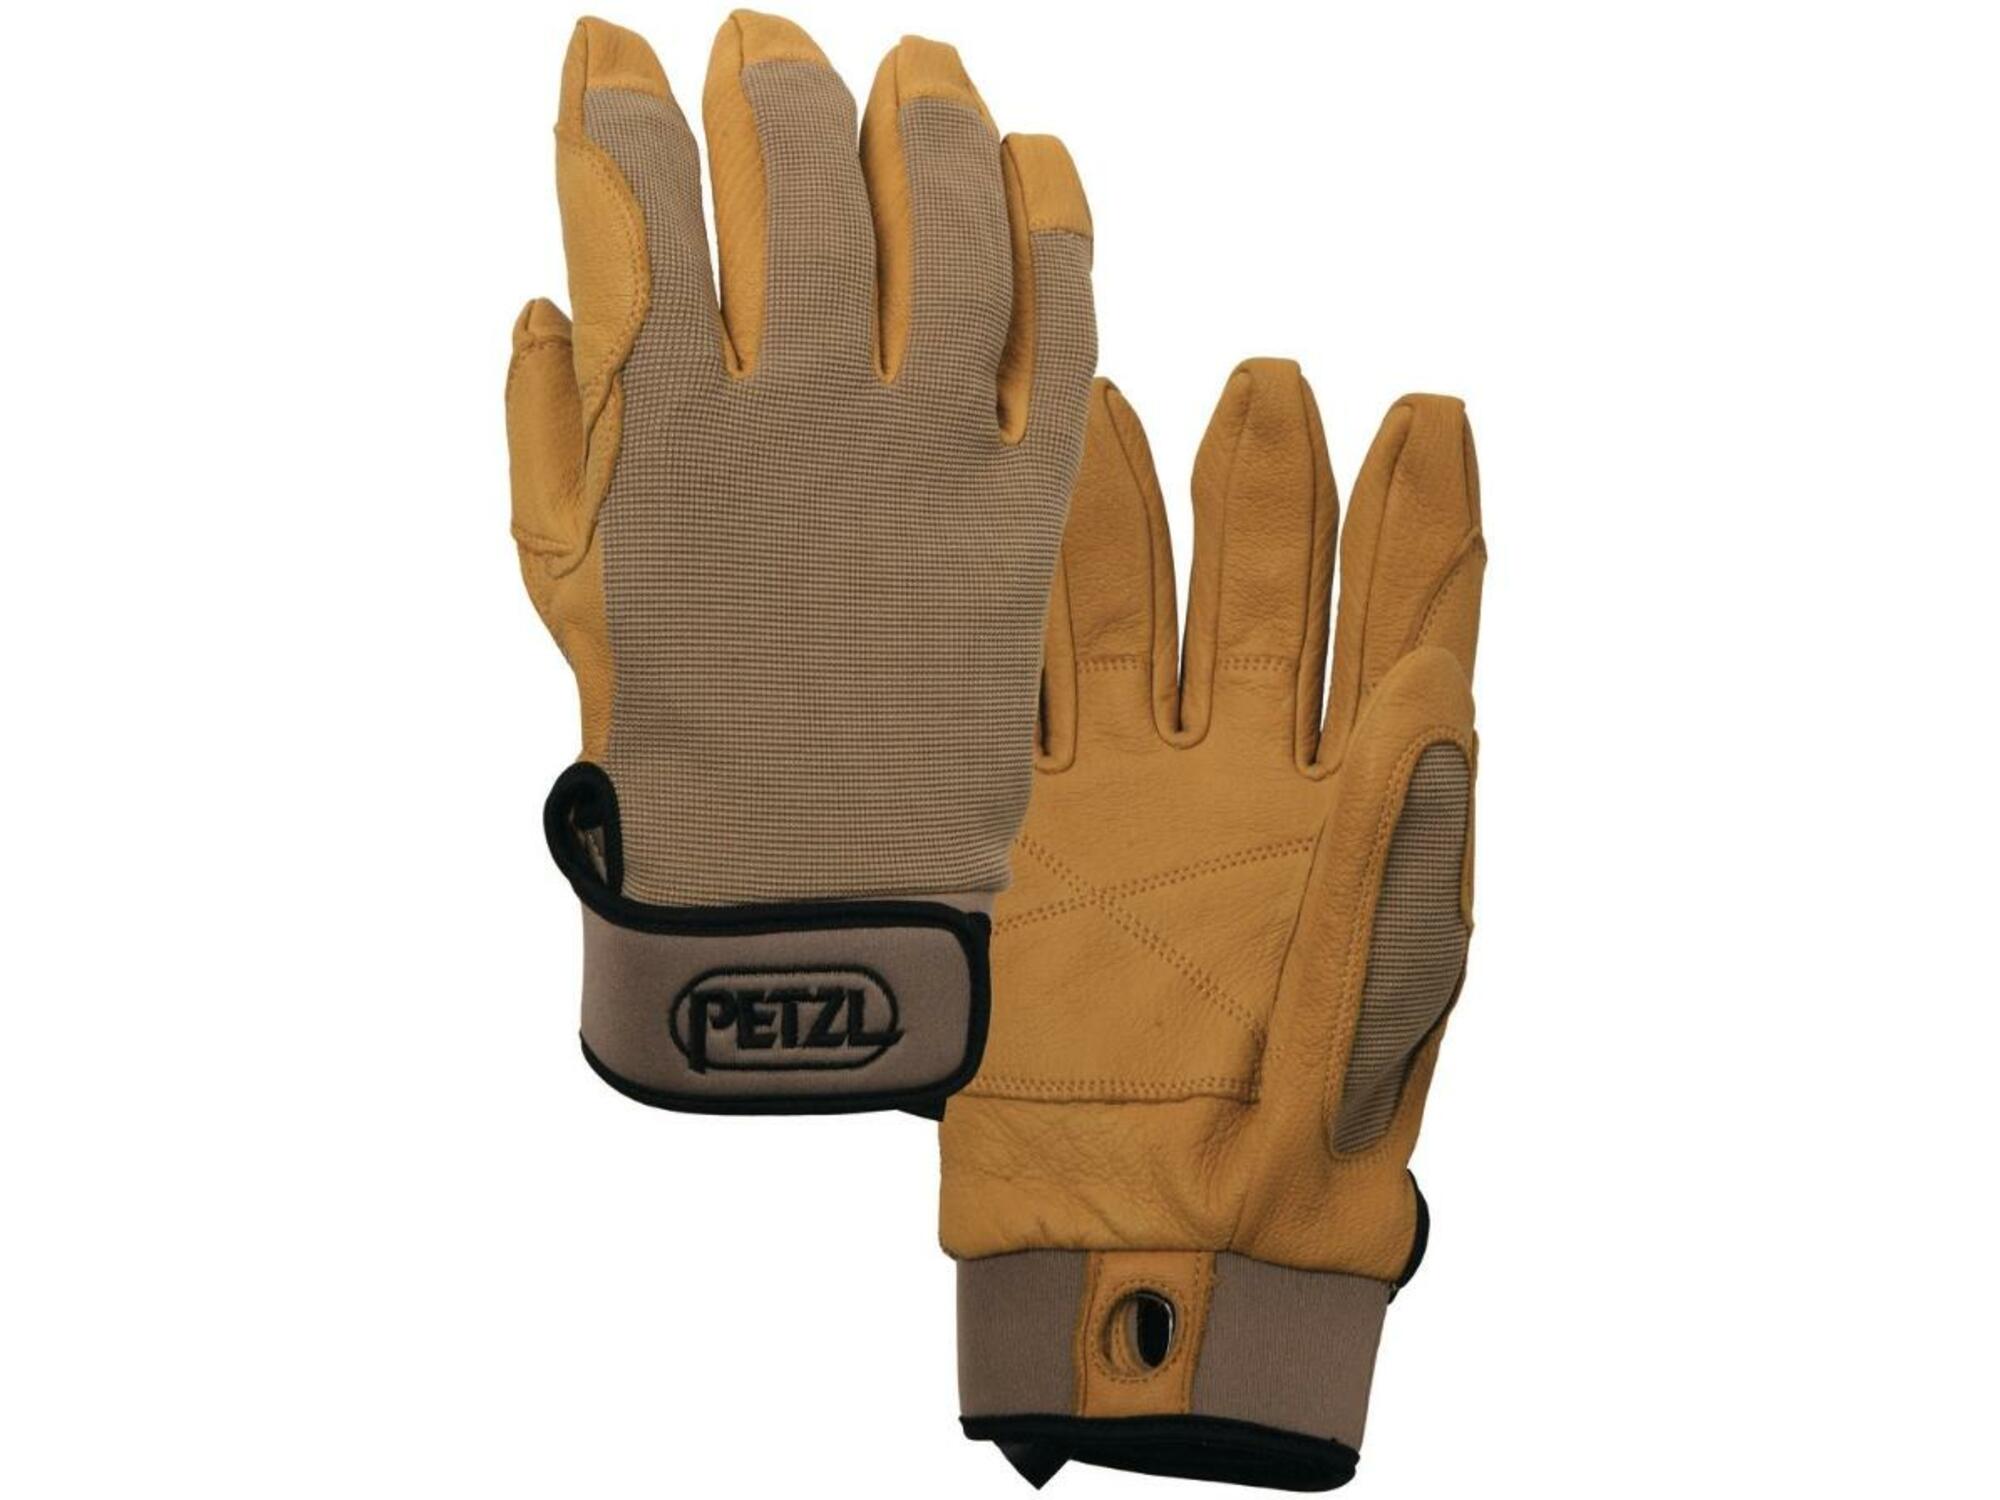 PETZL rokavice za spust in delo z vrvmi CORDEX K52 LT, svetlo rjava barva velikost L